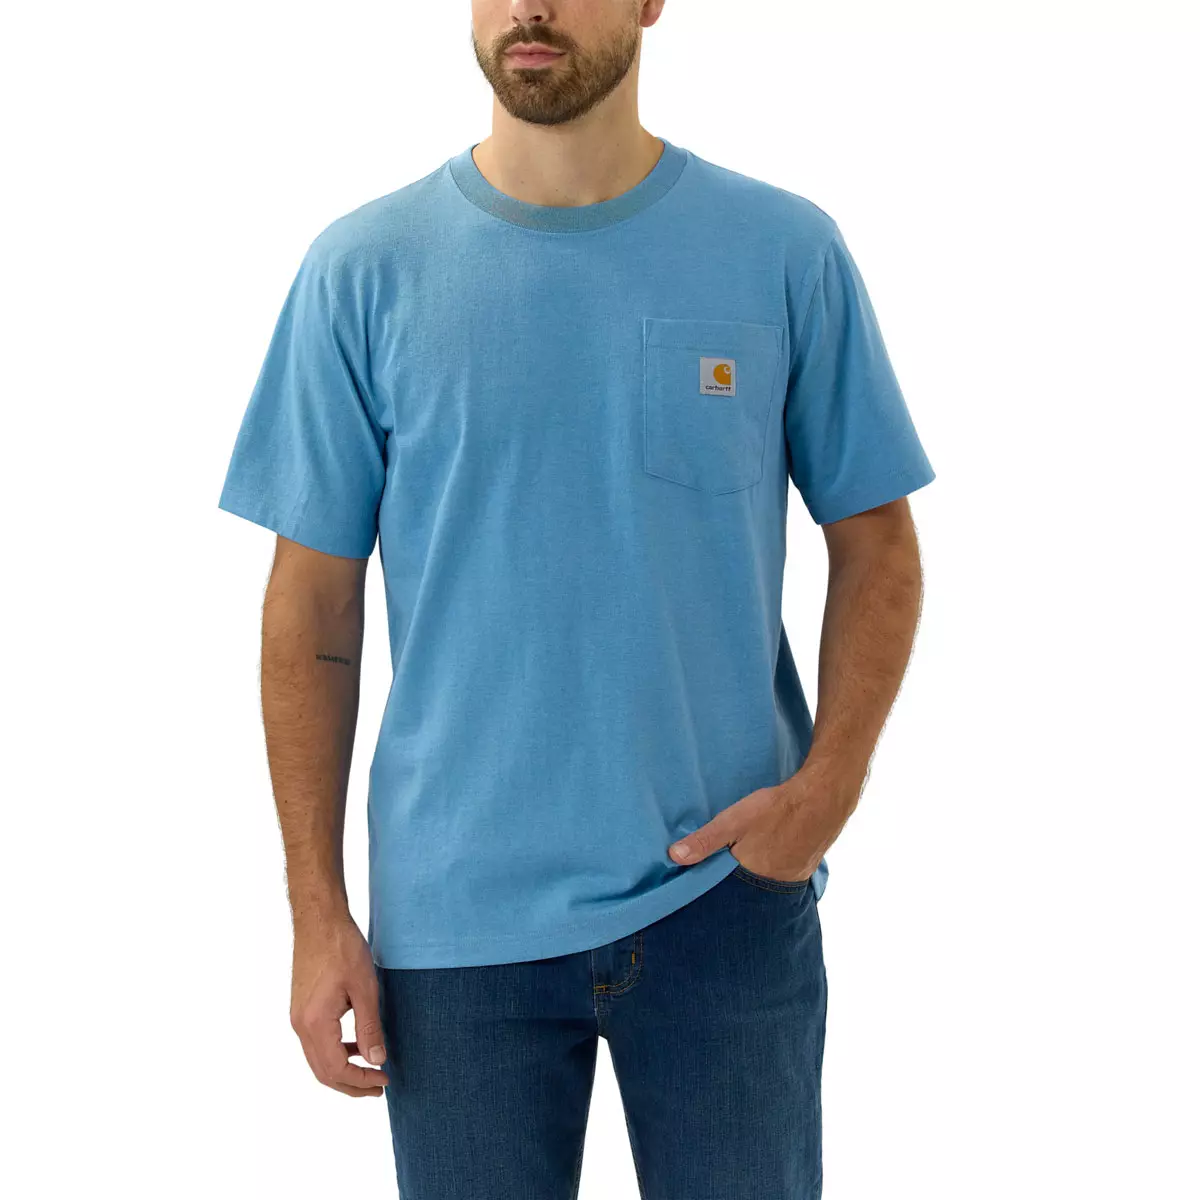 Carhartt T-Shirt mit Brusttasche - 21